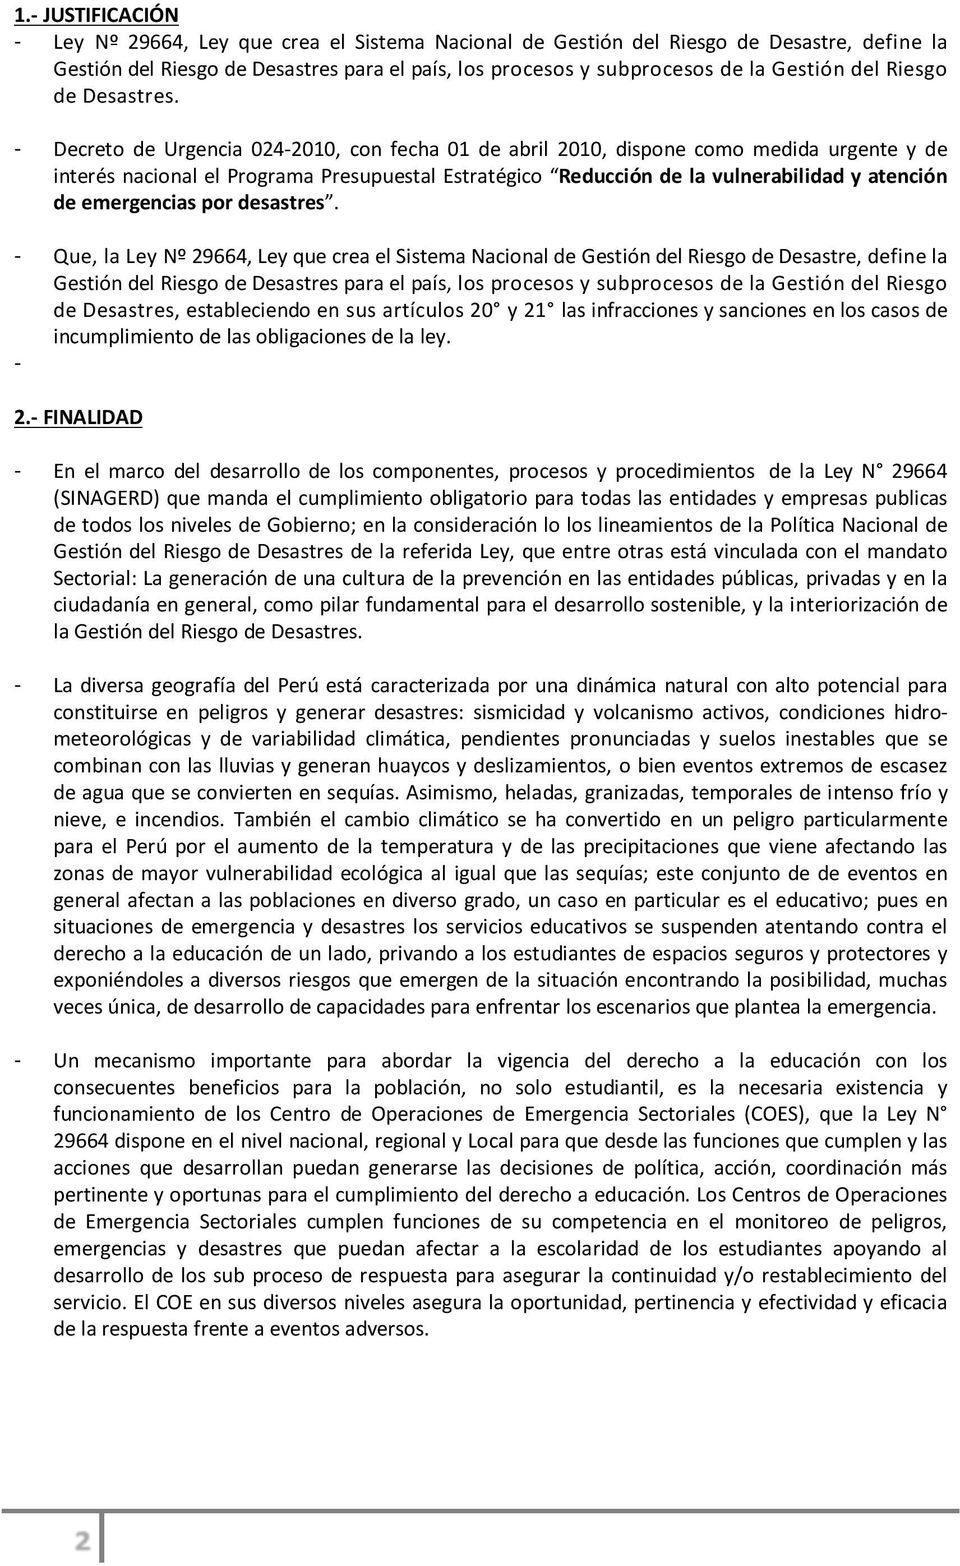 Decreto de Urgencia 0242010, con fecha 01 de abril 2010, dispone como medida urgente y de interés nacional el Programa Presupuestal Estratégico Reducción de la vulnerabilidad y atención de